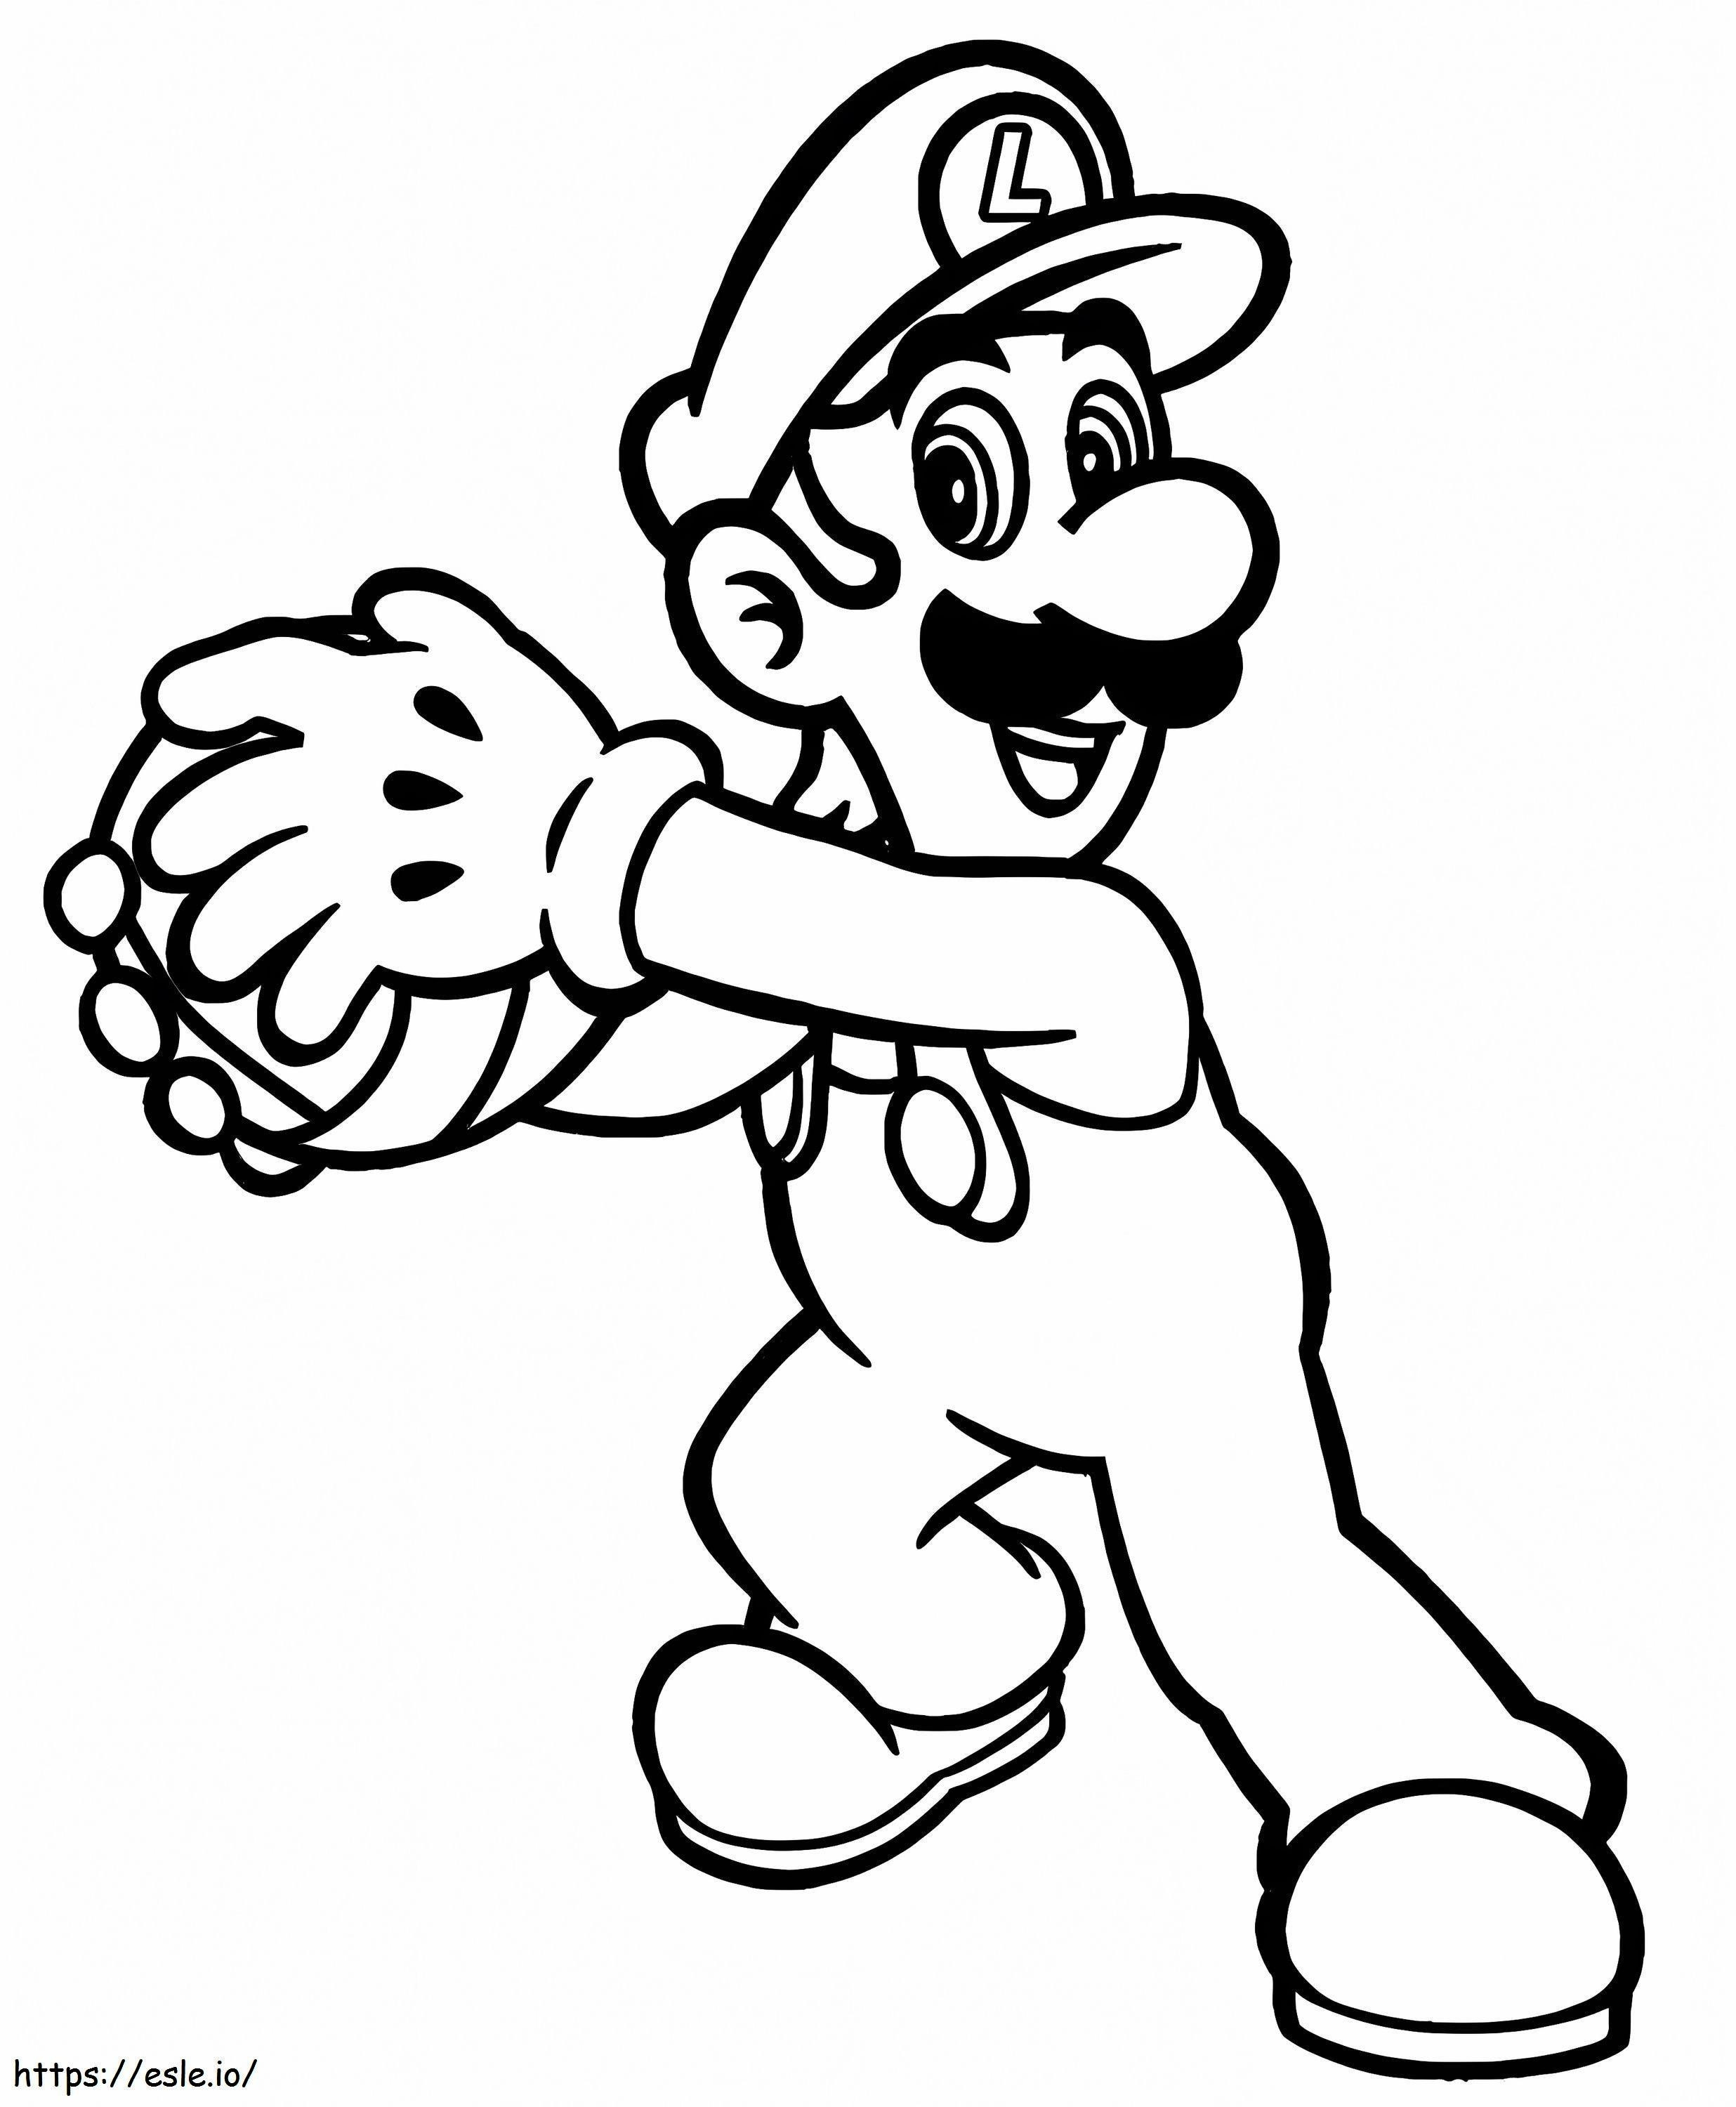 Luigi houdt de bal vast kleurplaat kleurplaat